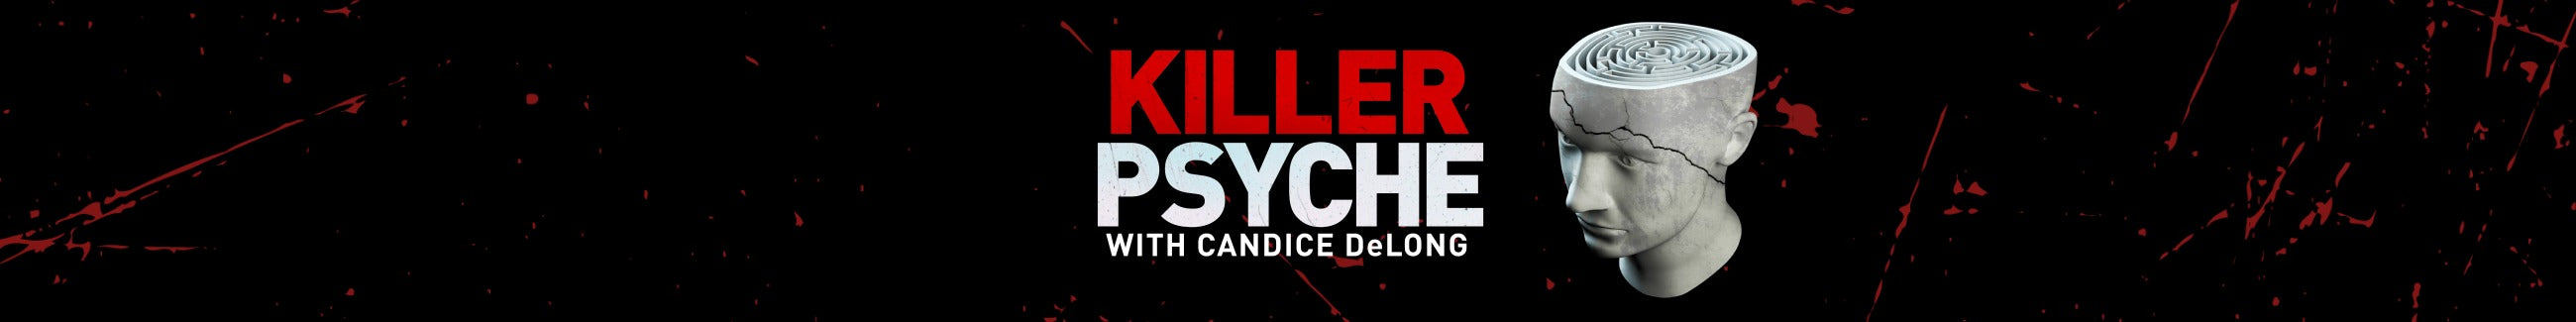 Killer Psyche